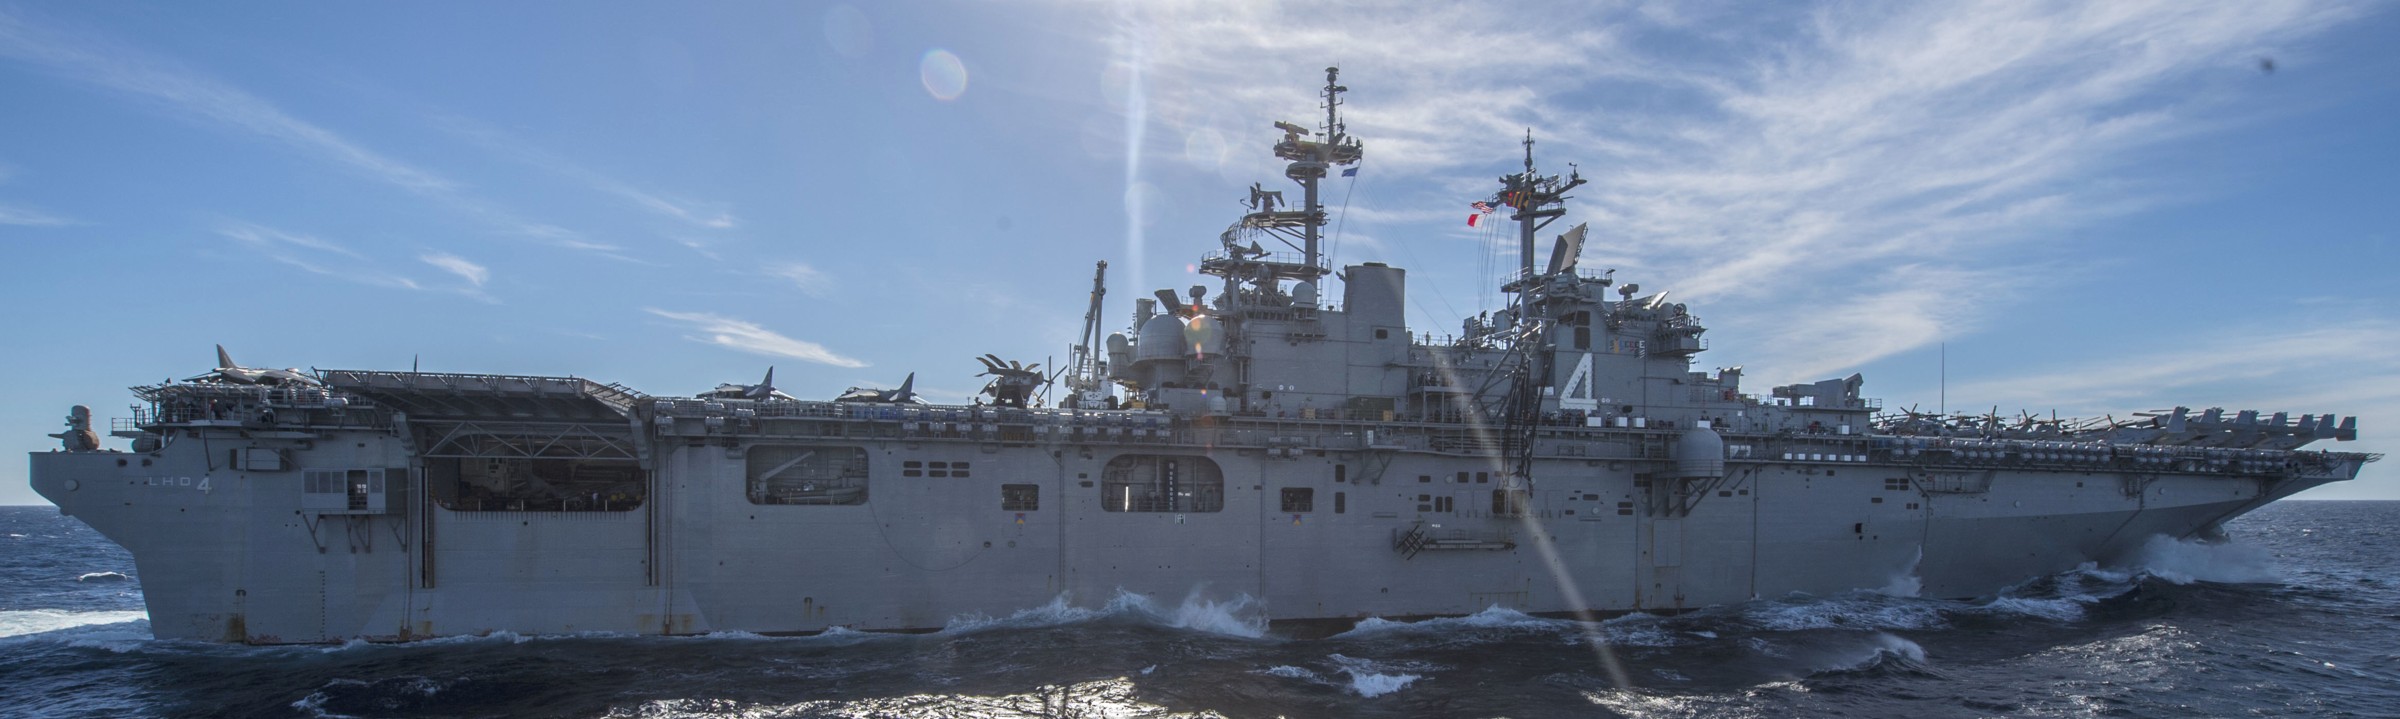 lhd-4 uss boxer wasp class amphibious assault ship dock landing us navy marines vmm-166 104